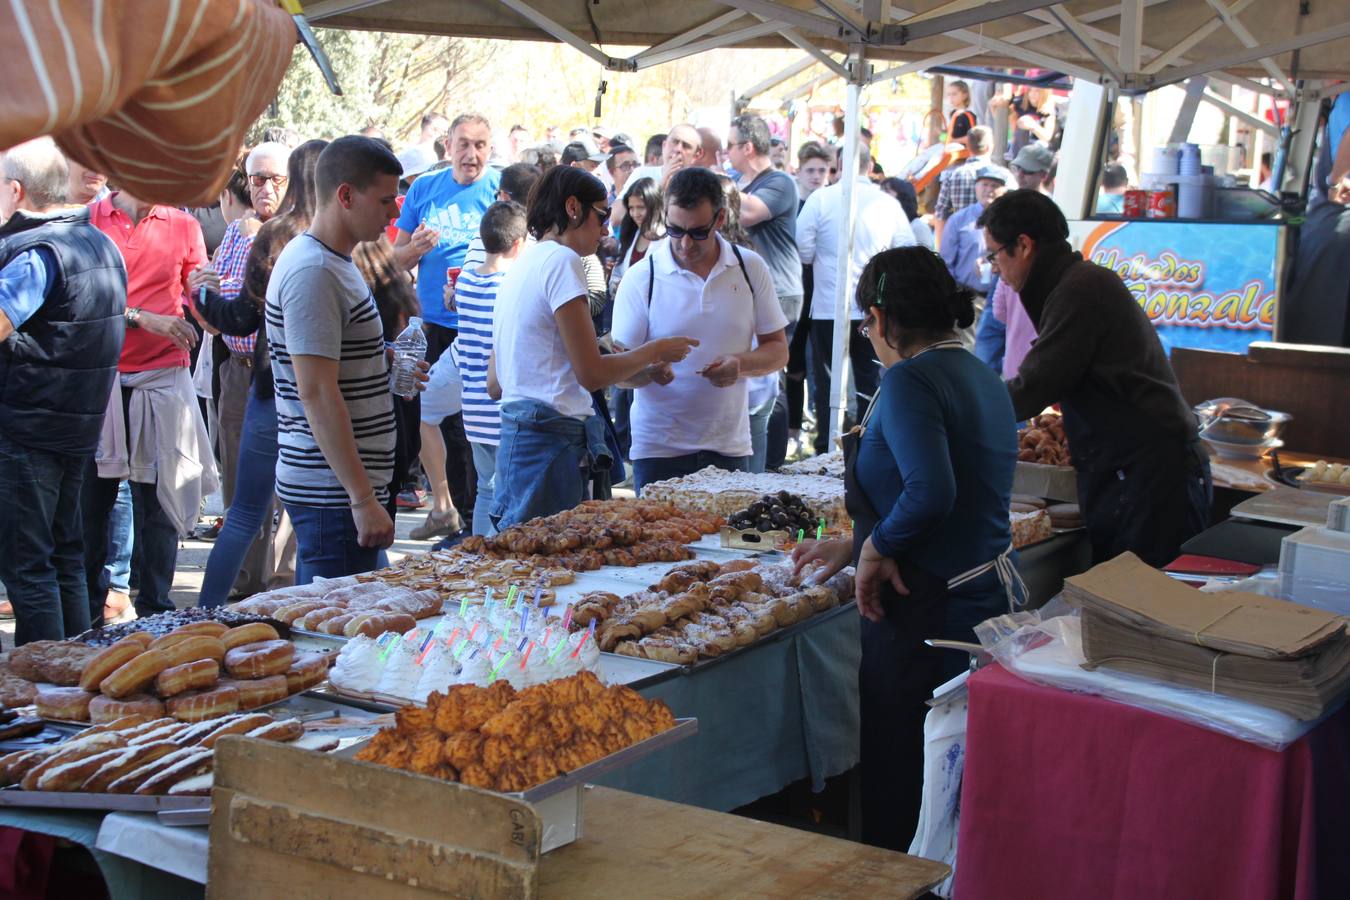 Gran ambiente en este festival gastronómico que se celebra cada año por estas fechas en Enciso.